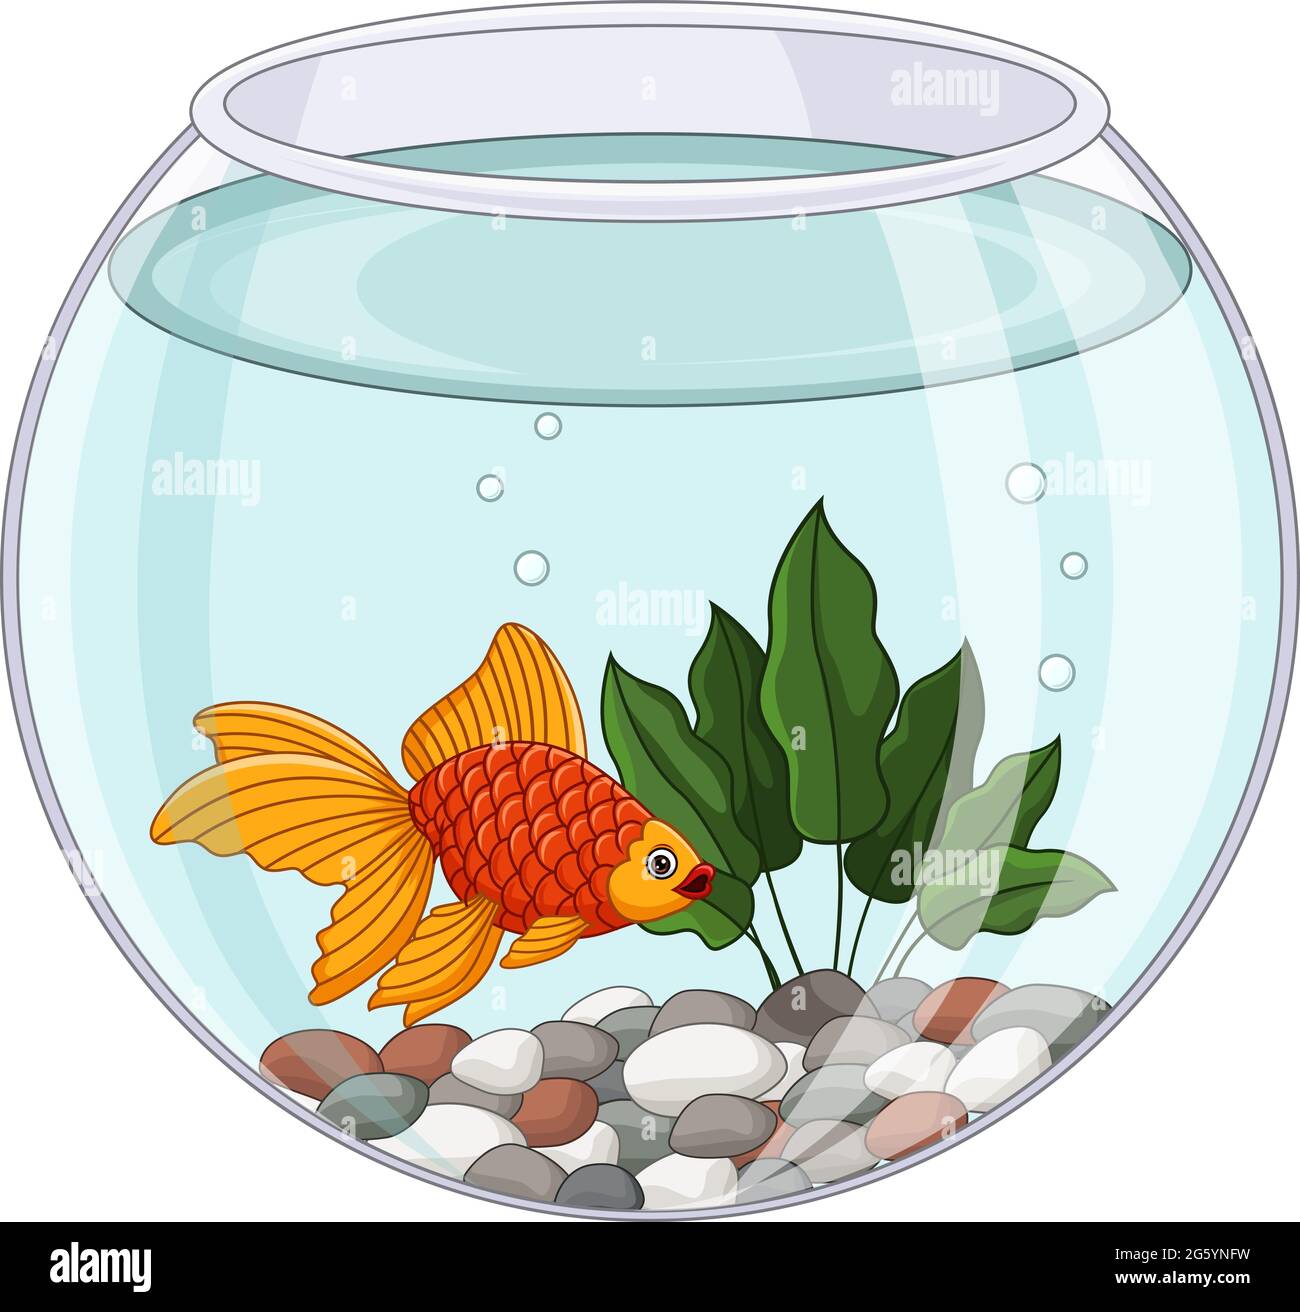 Dessin animé de poissons rouges nageant dans un bol à poissons Illustration de Vecteur